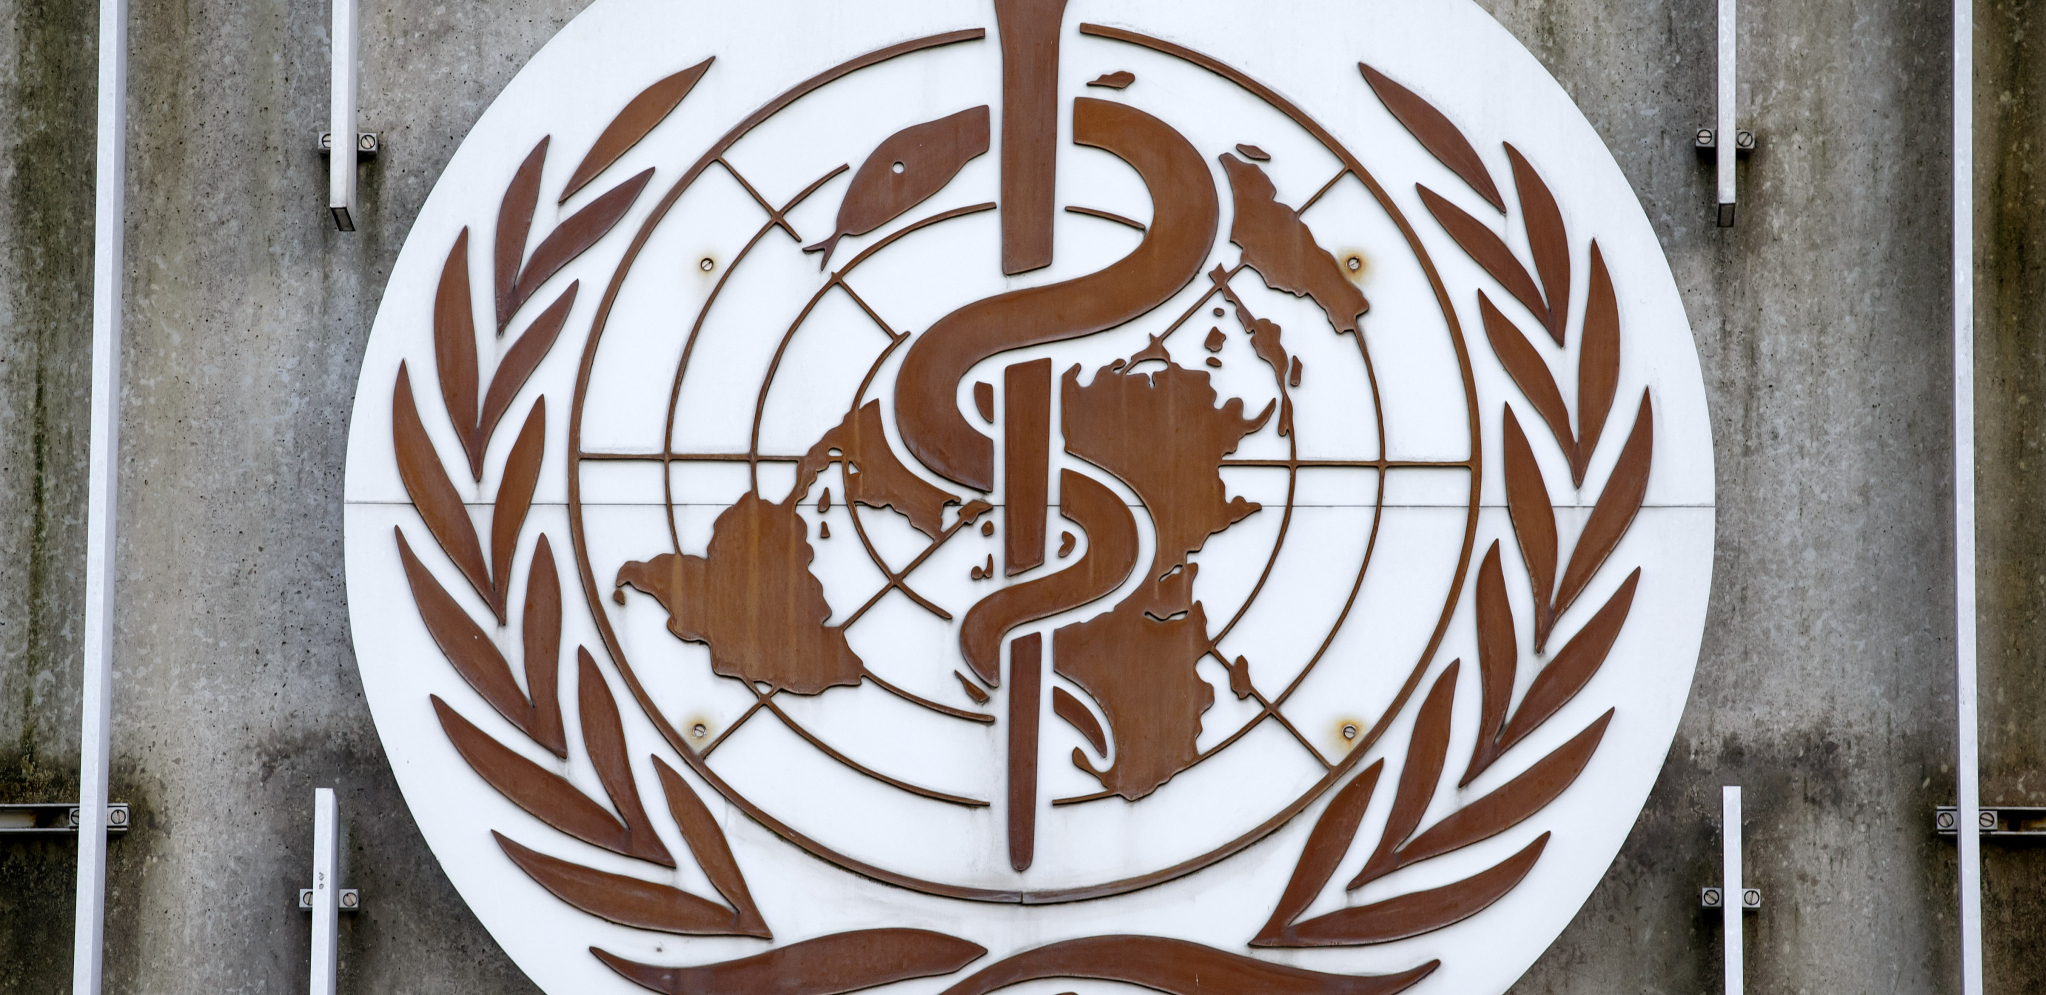 ŠOKANTNE TVRDNJE  Zvaničnik Svetske zdravstvene organizacije: Nulti pacijent je iz laboratorije u Vuhanu!?